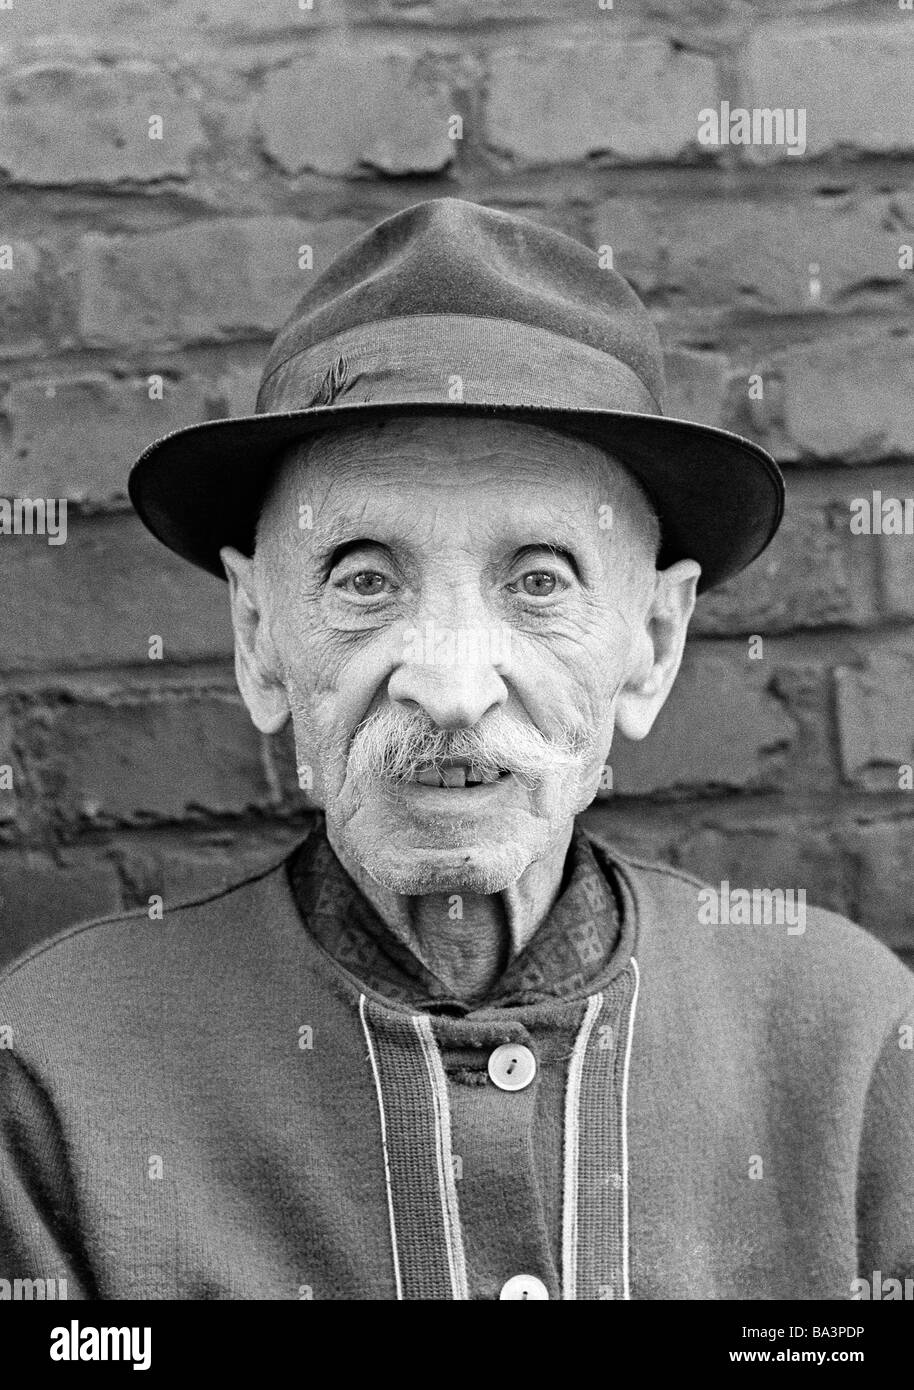 Negli anni settanta, foto in bianco e nero, persone, uomo anziano, ritratto, gilet, cappello, di età compresa tra 80 a 90 anni Foto Stock